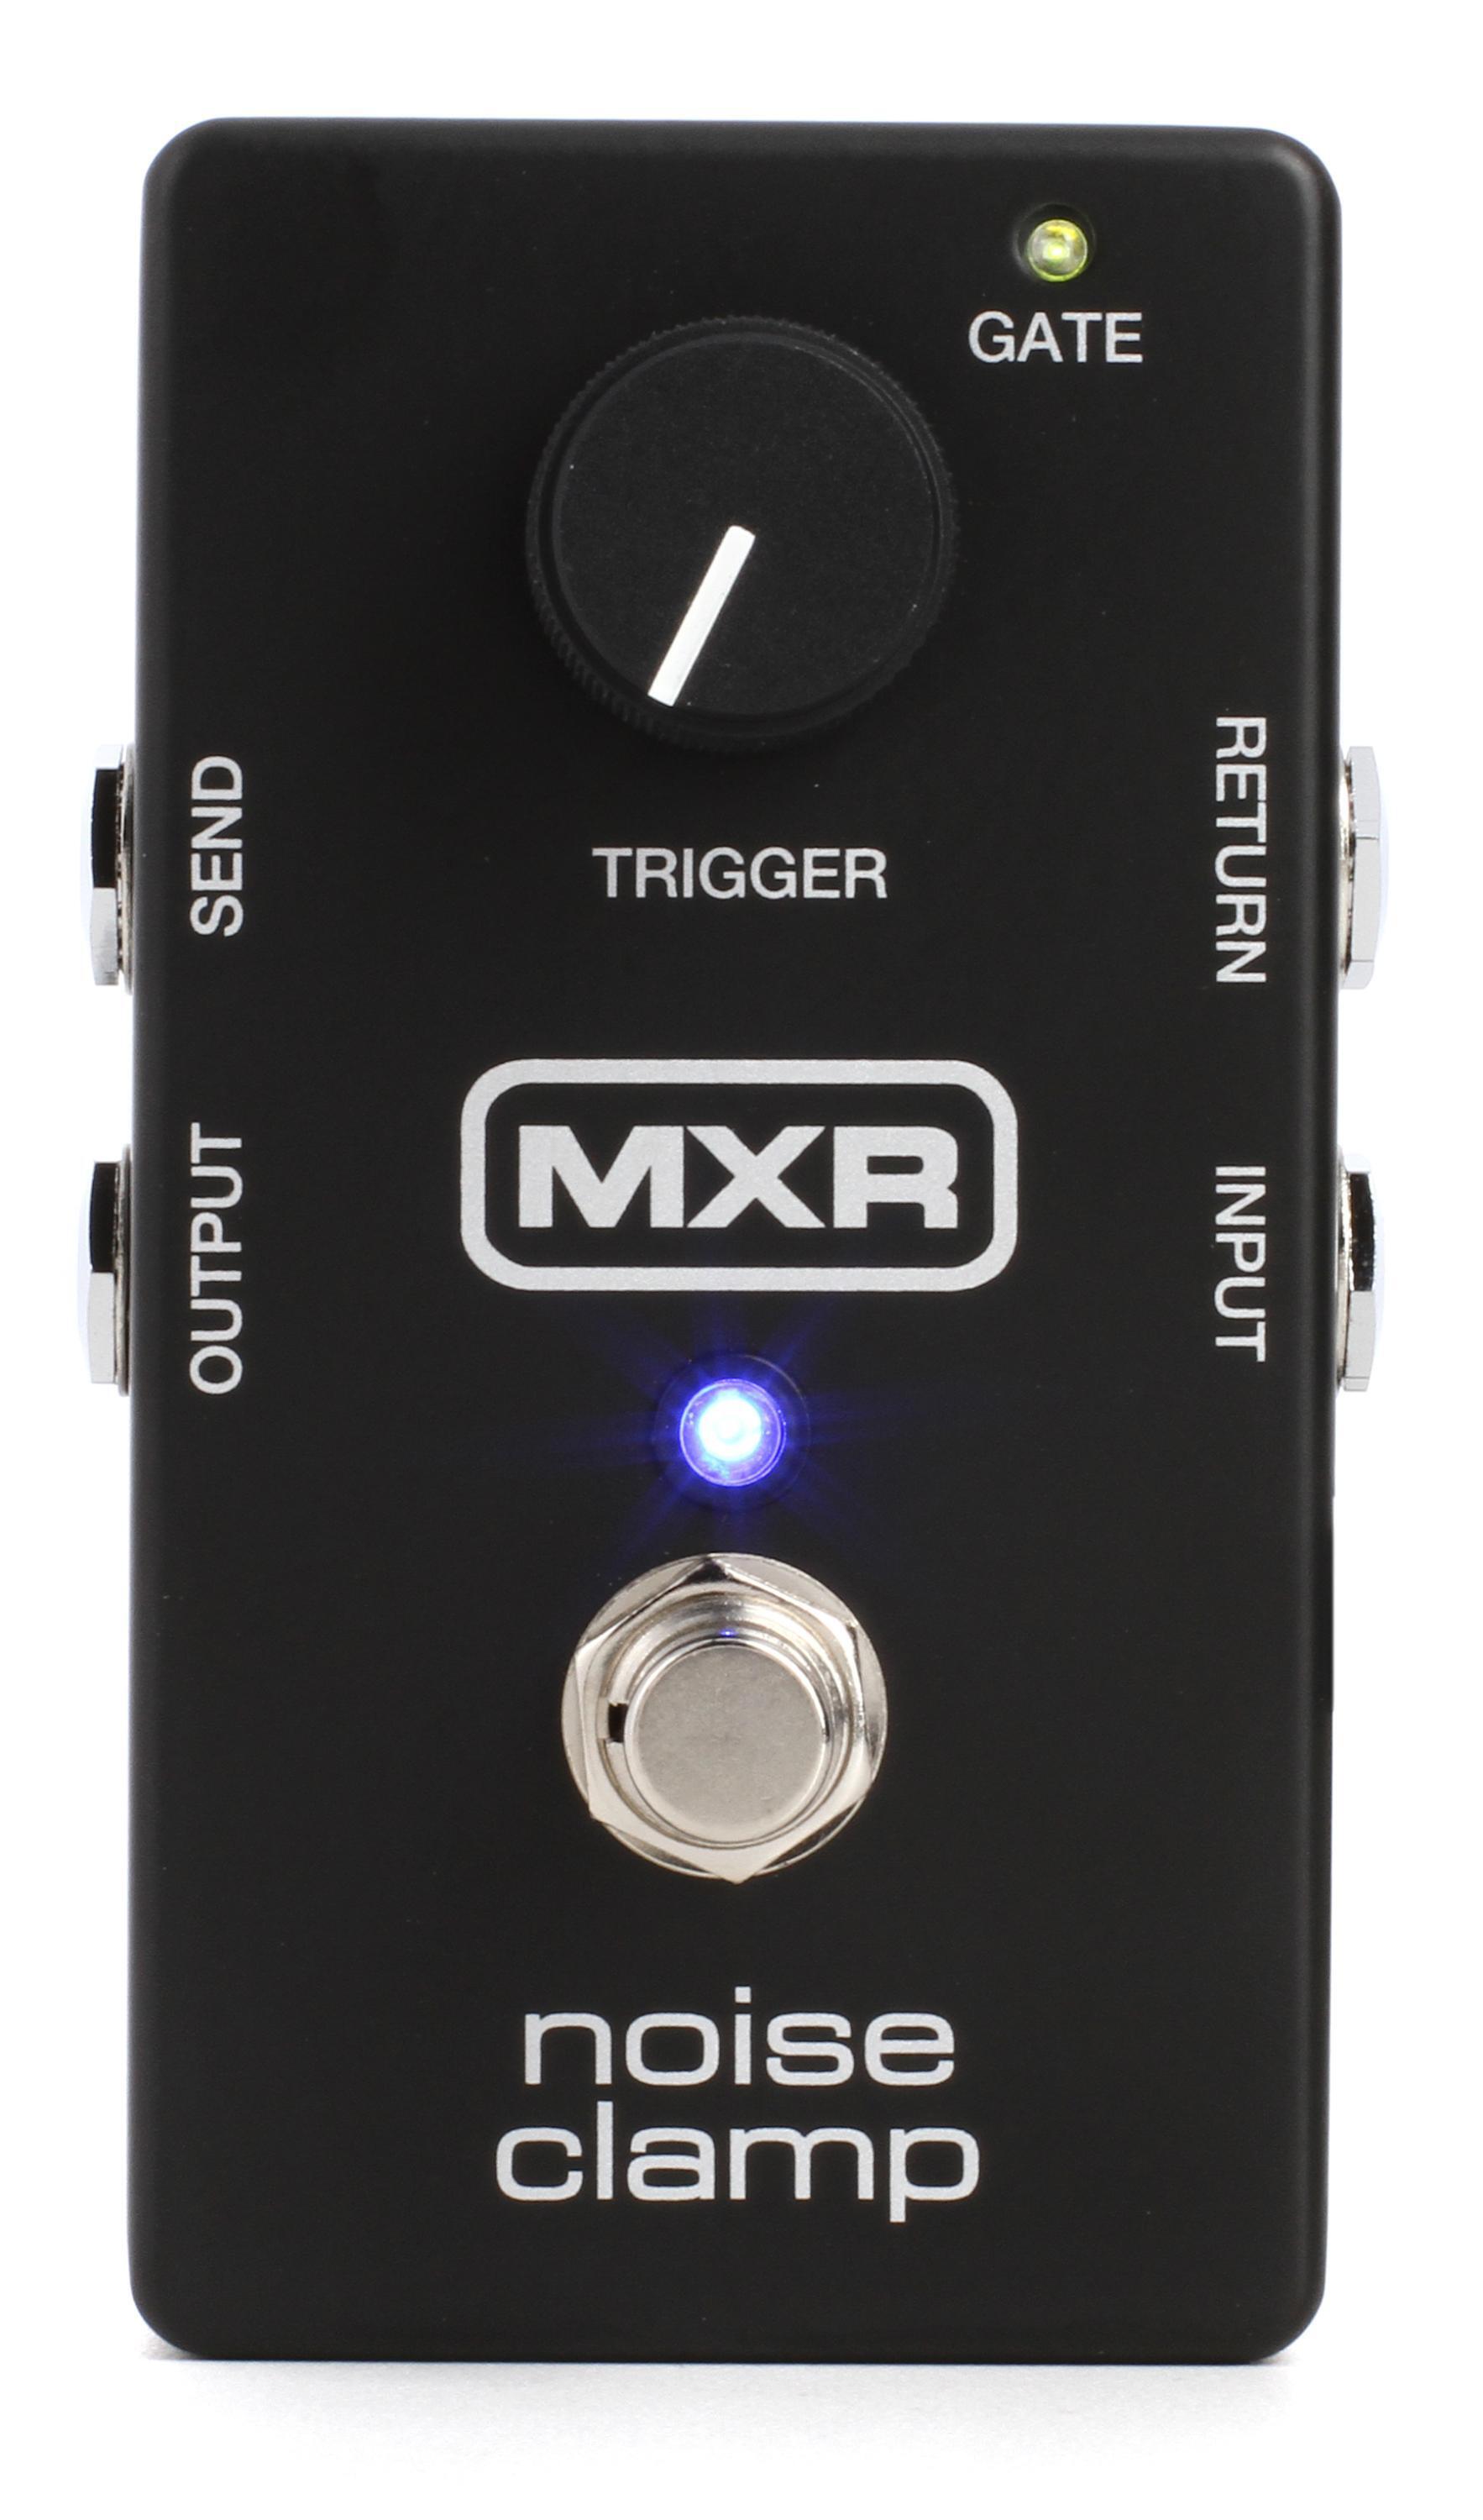 Bundled Item: MXR M195 Noise Clamp Noise Reduction / Gate Pedal